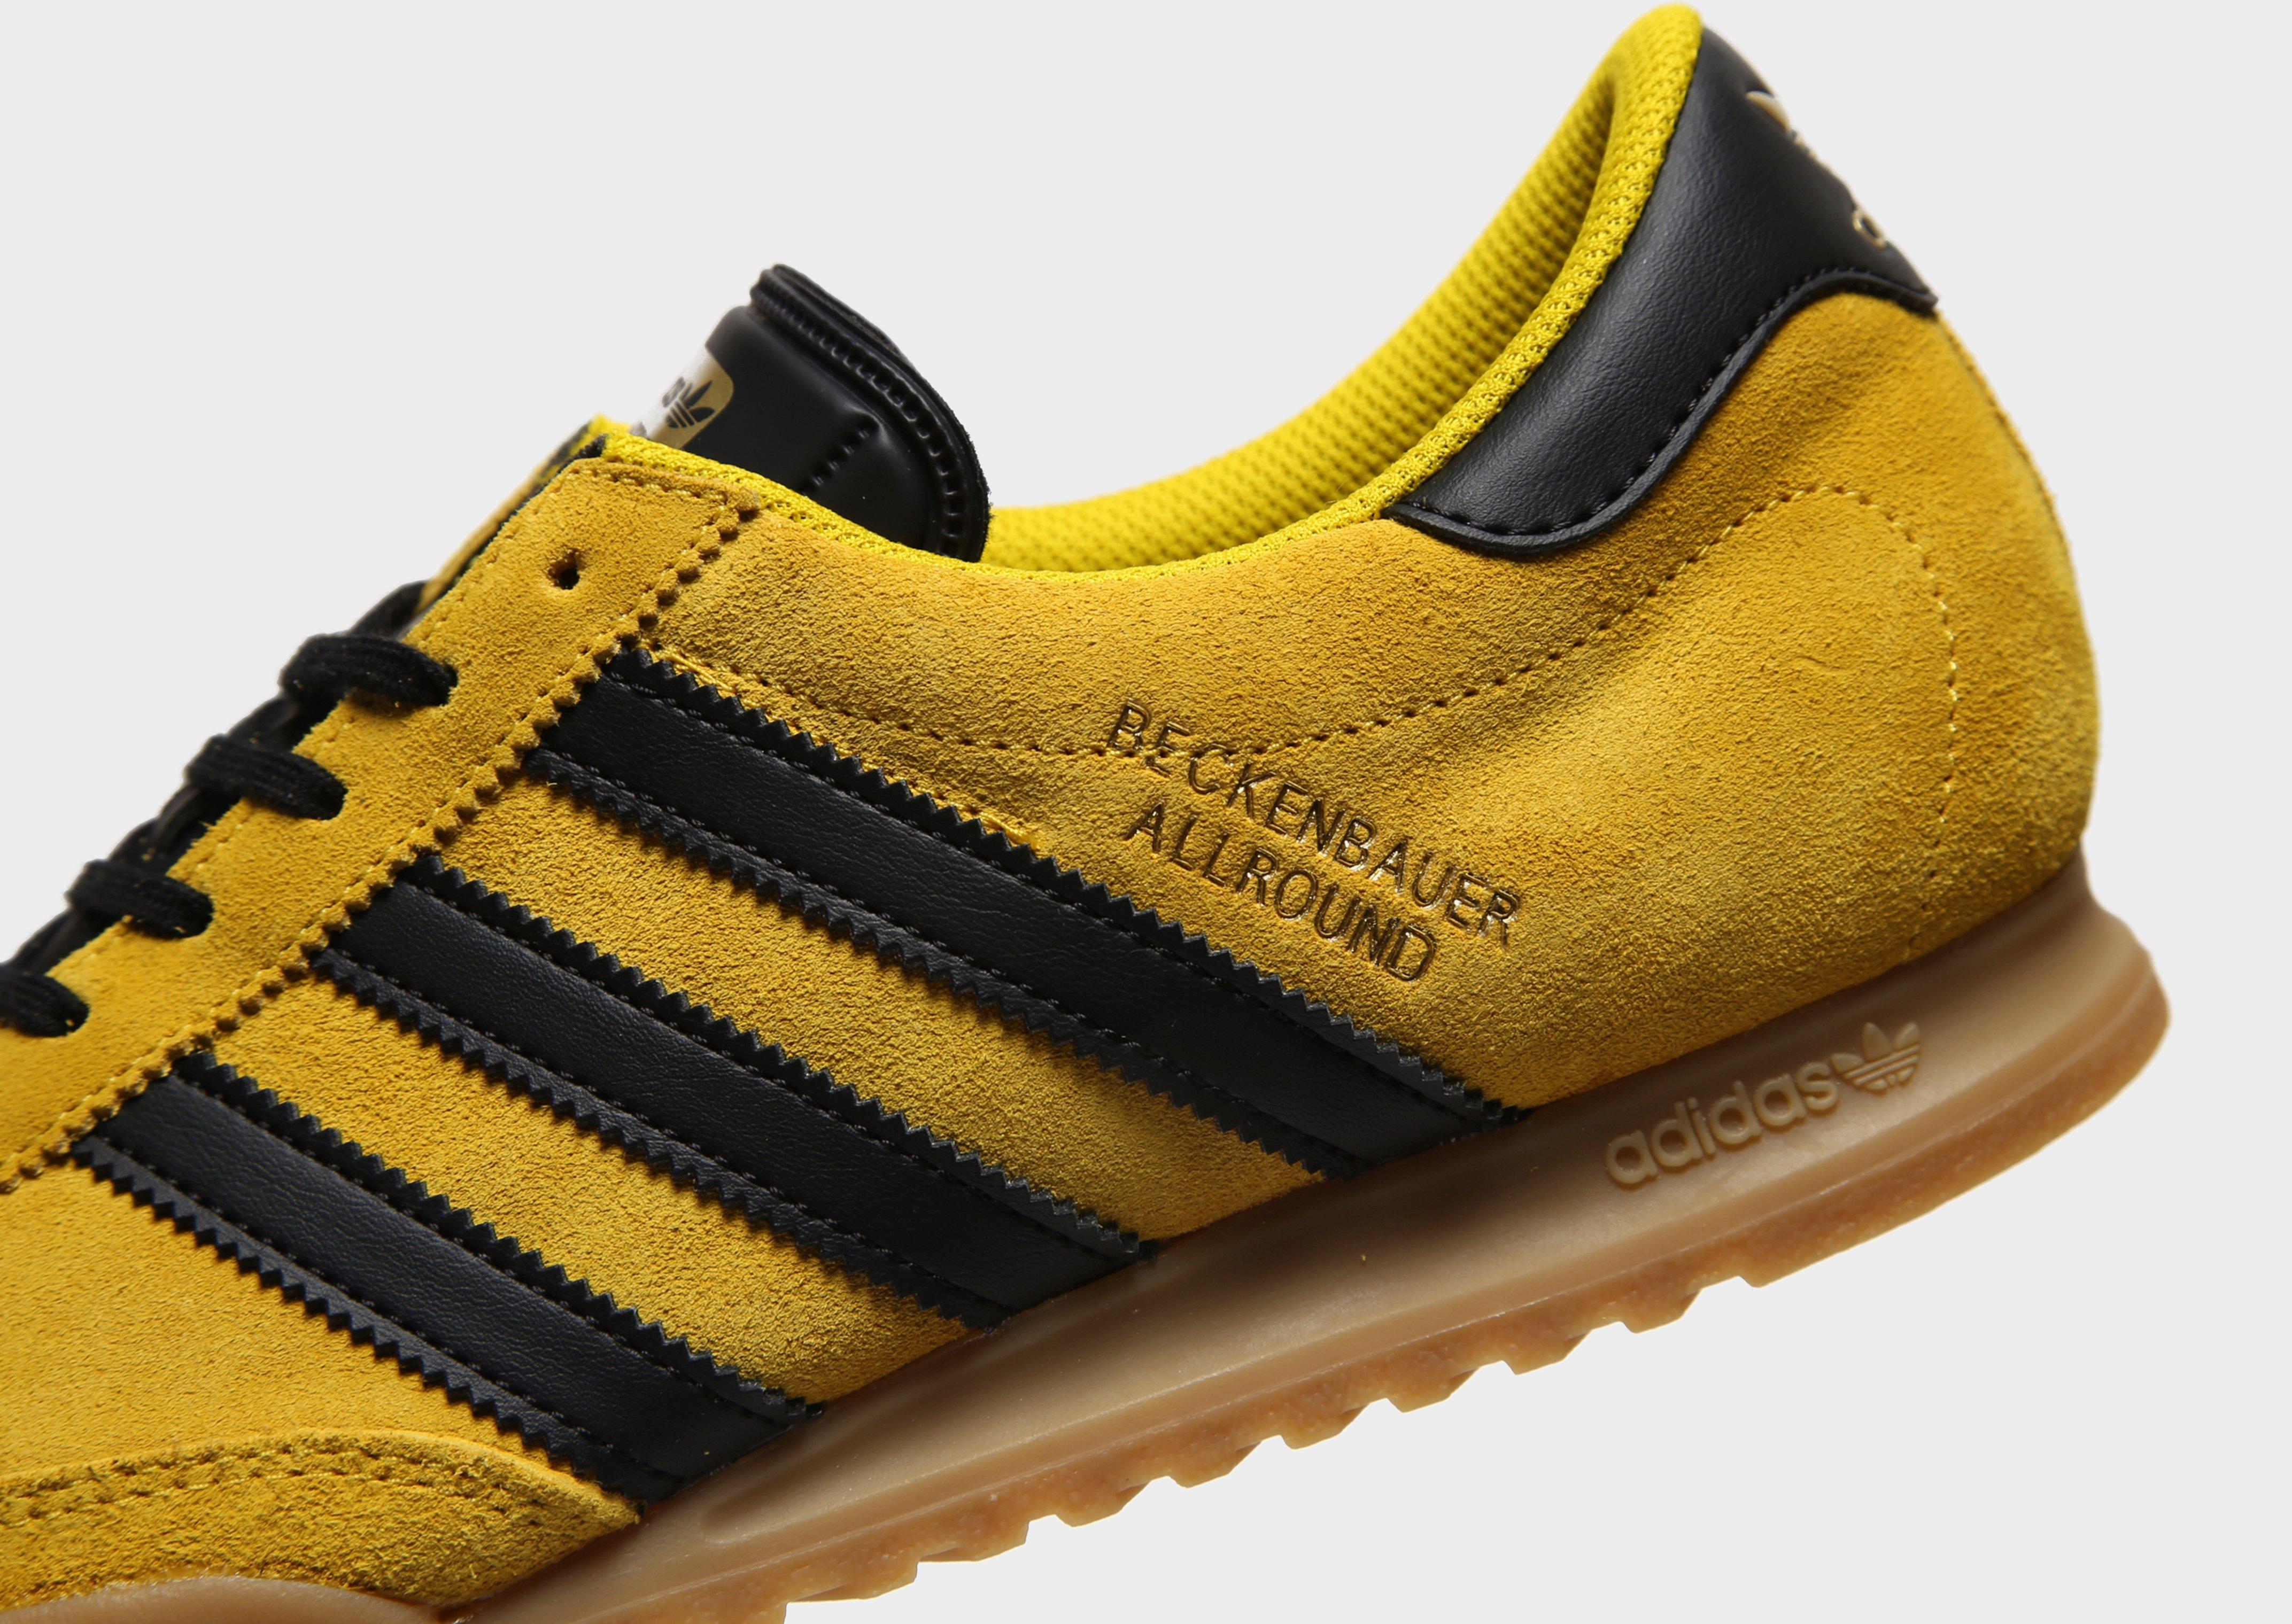 adidas beckenbauer allround black yellow